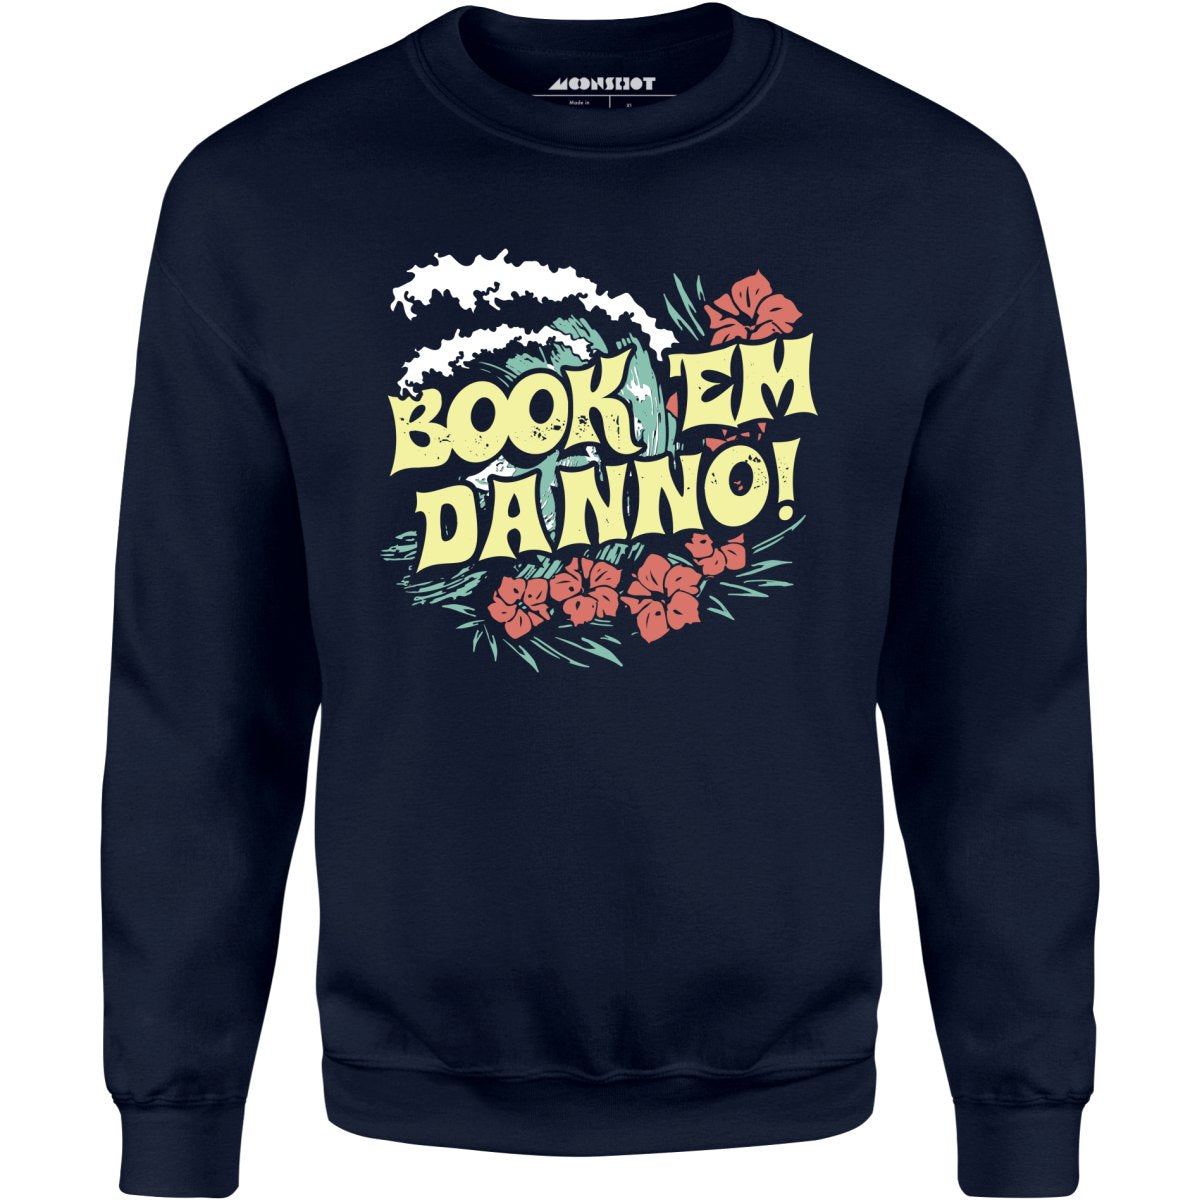 Book 'em Danno! - Unisex Sweatshirt